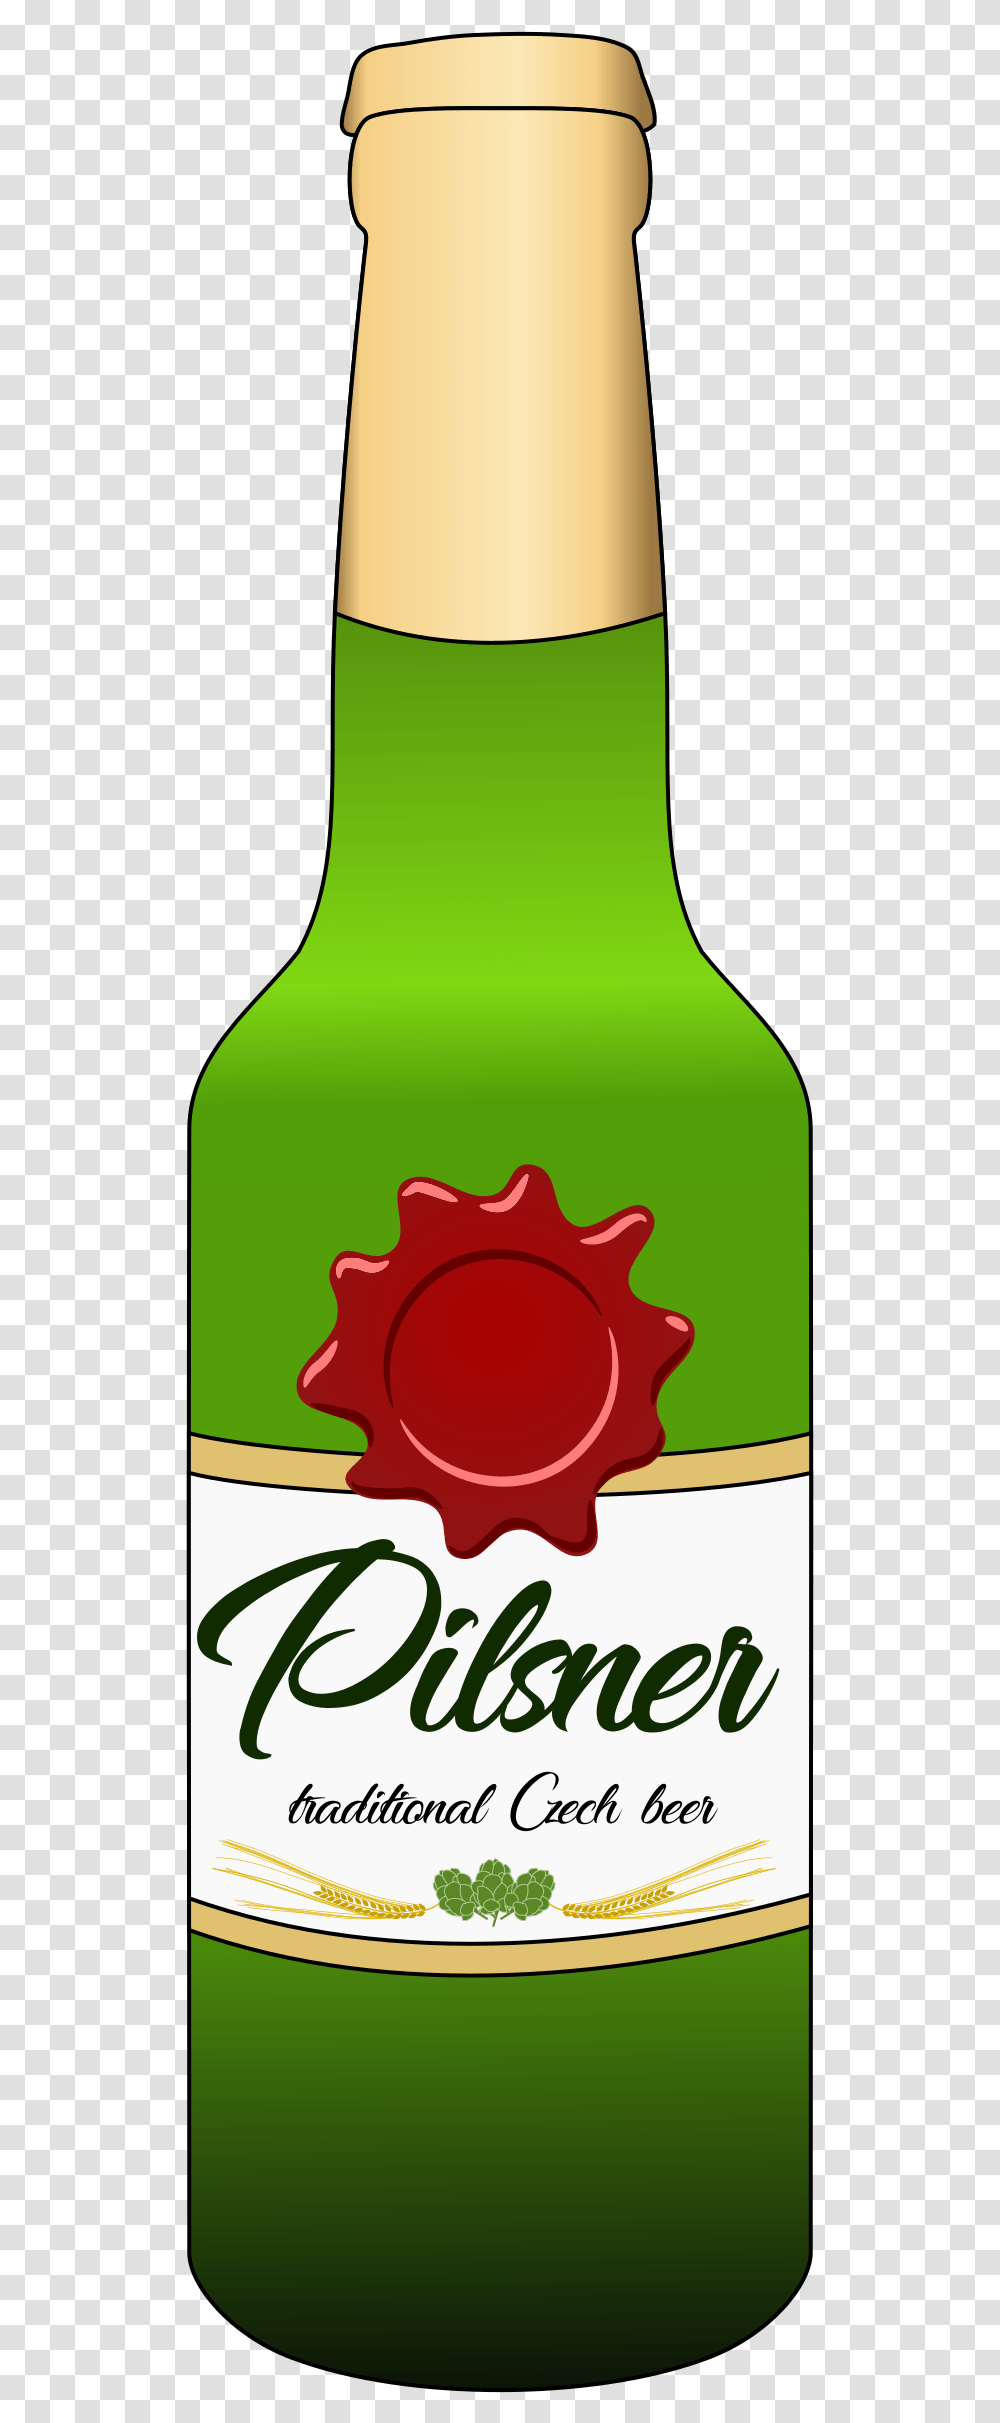 Pilsner Beer Bottle Clip Arts Bottle Of Beer Clipart, Beverage, Drink, Juice, Soda Transparent Png